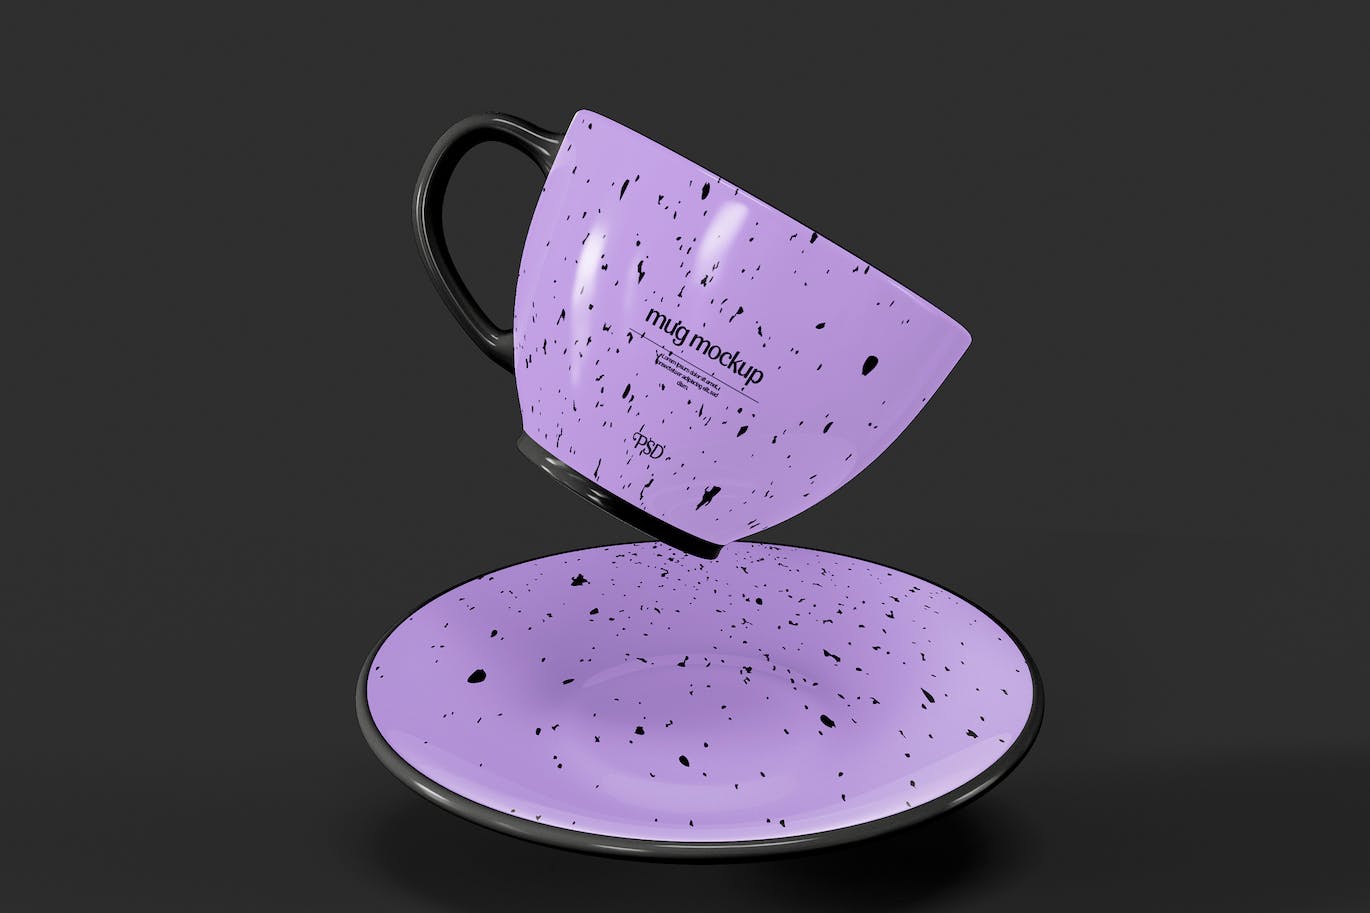 陶瓷咖啡马克杯杯身设计样机模板v6 Ceramic Mugs Mockup 样机素材 第1张